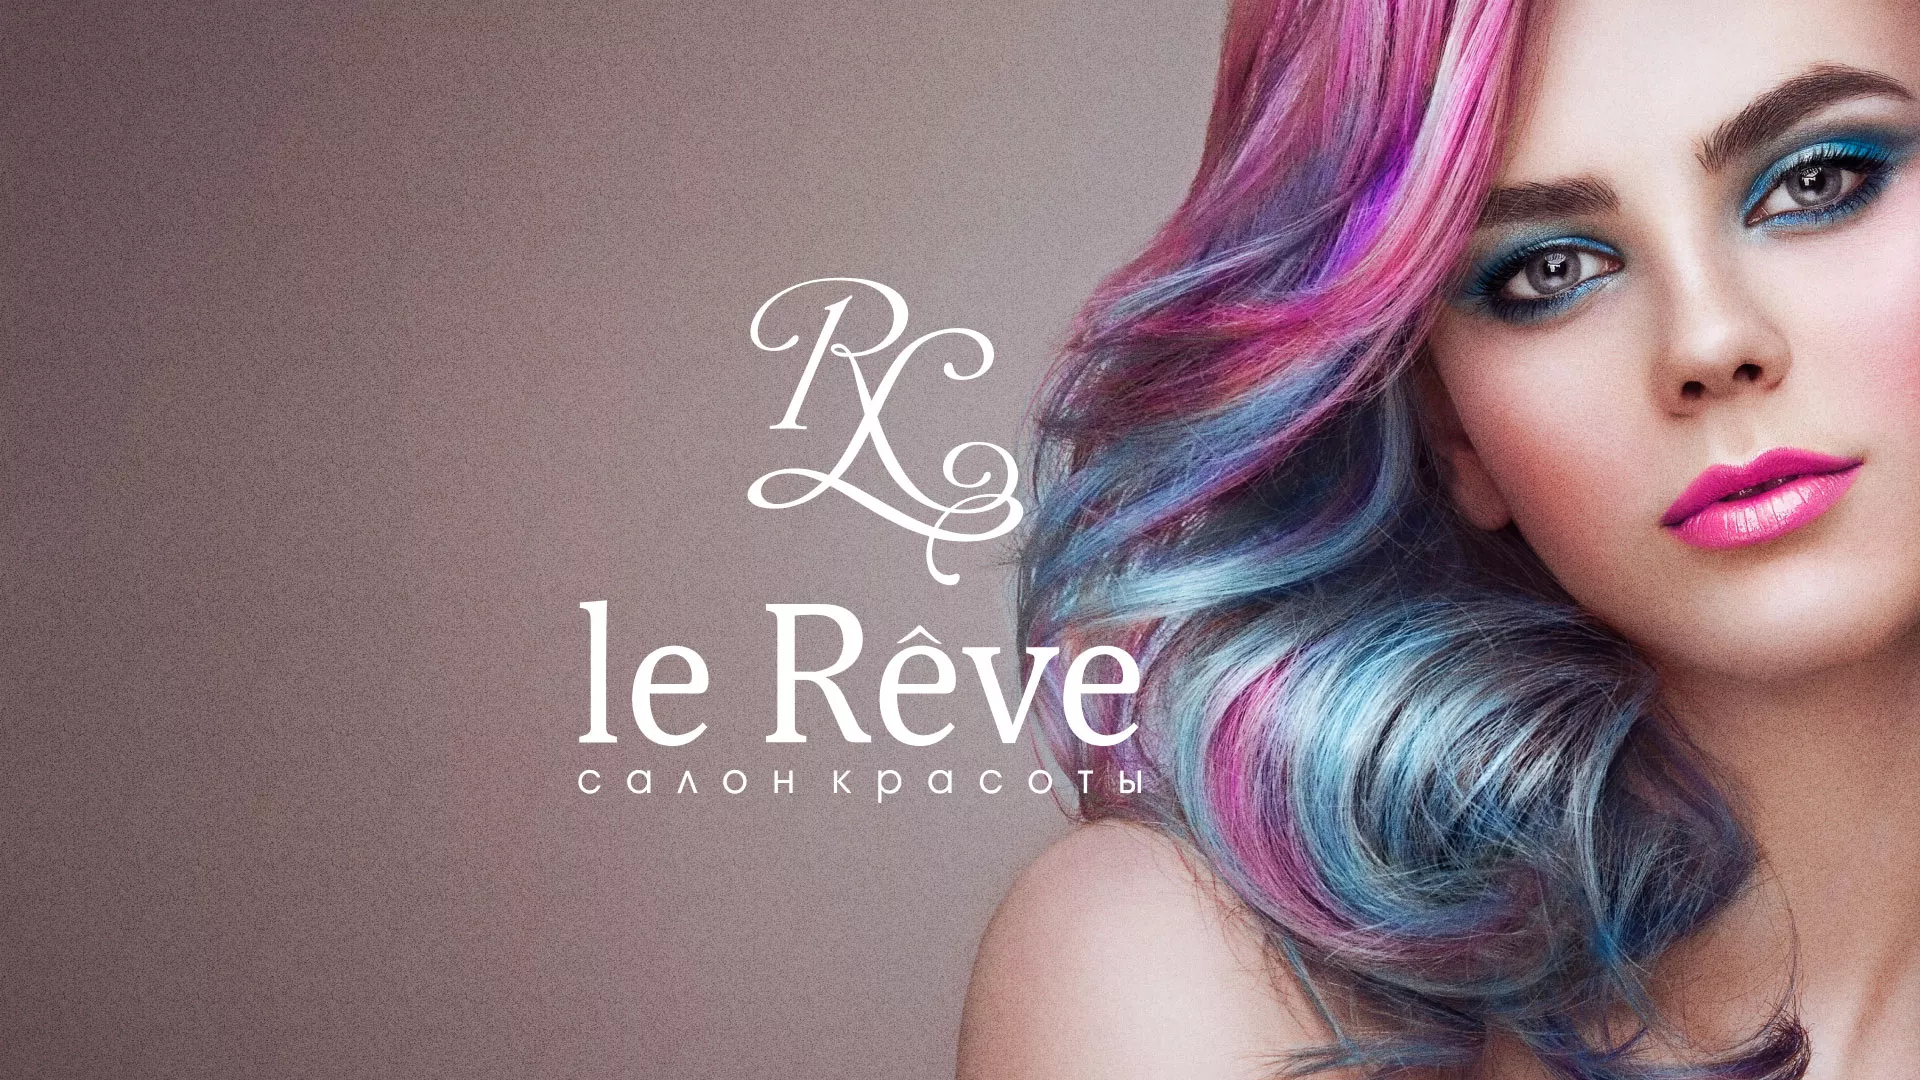 Создание сайта для салона красоты «Le Reve» в Наволоках